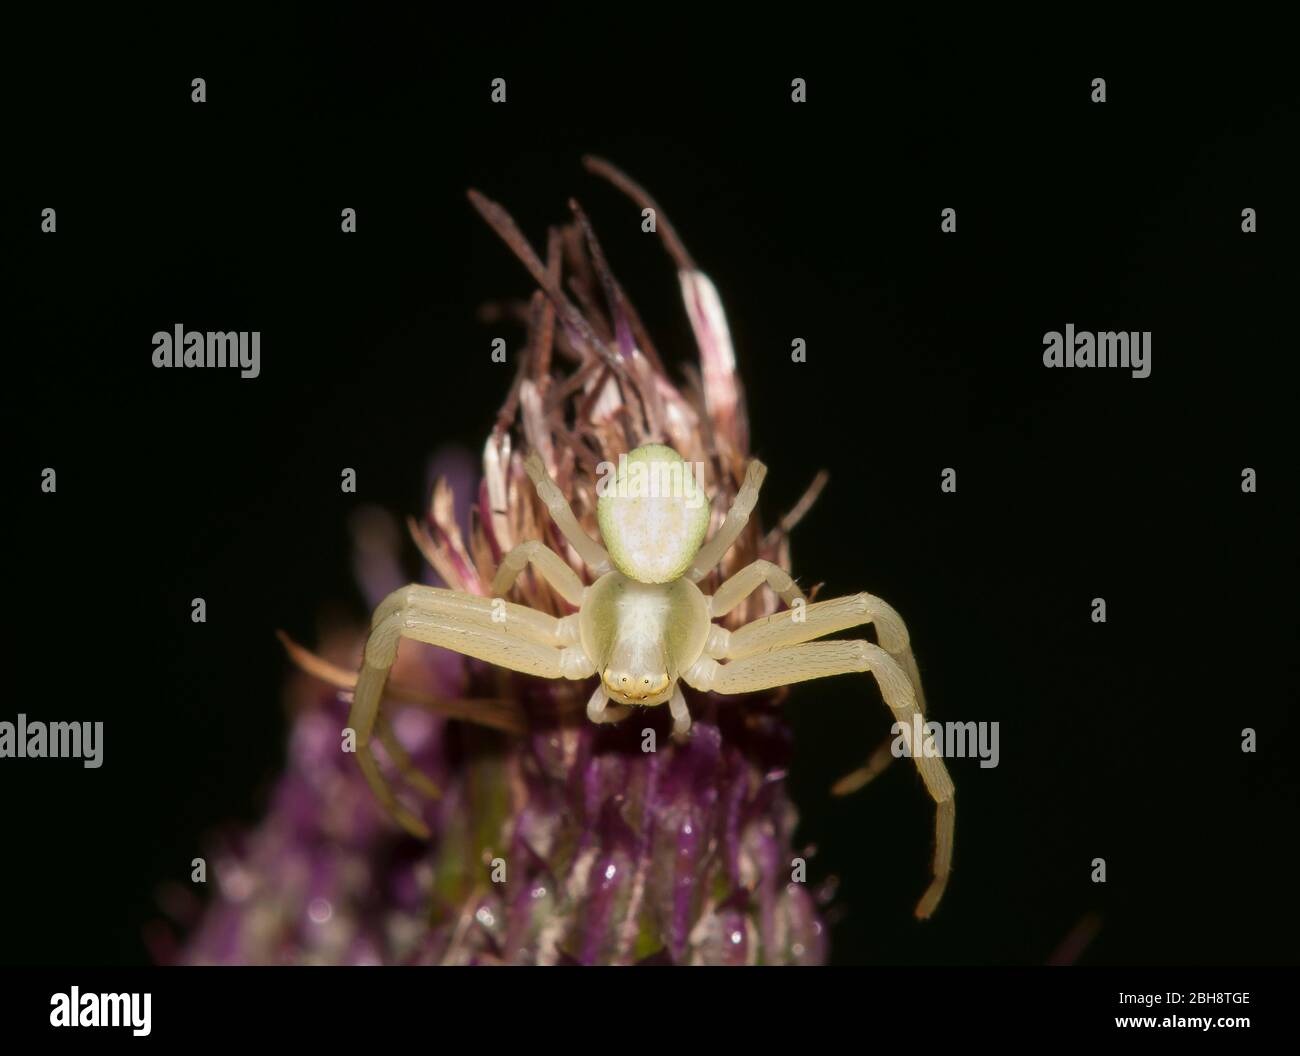 Araña de cangrejo de flores, Misumena vatia, en posición defensiva, sentada sobre cardo púrpura, Baviera, Alemania Foto de stock